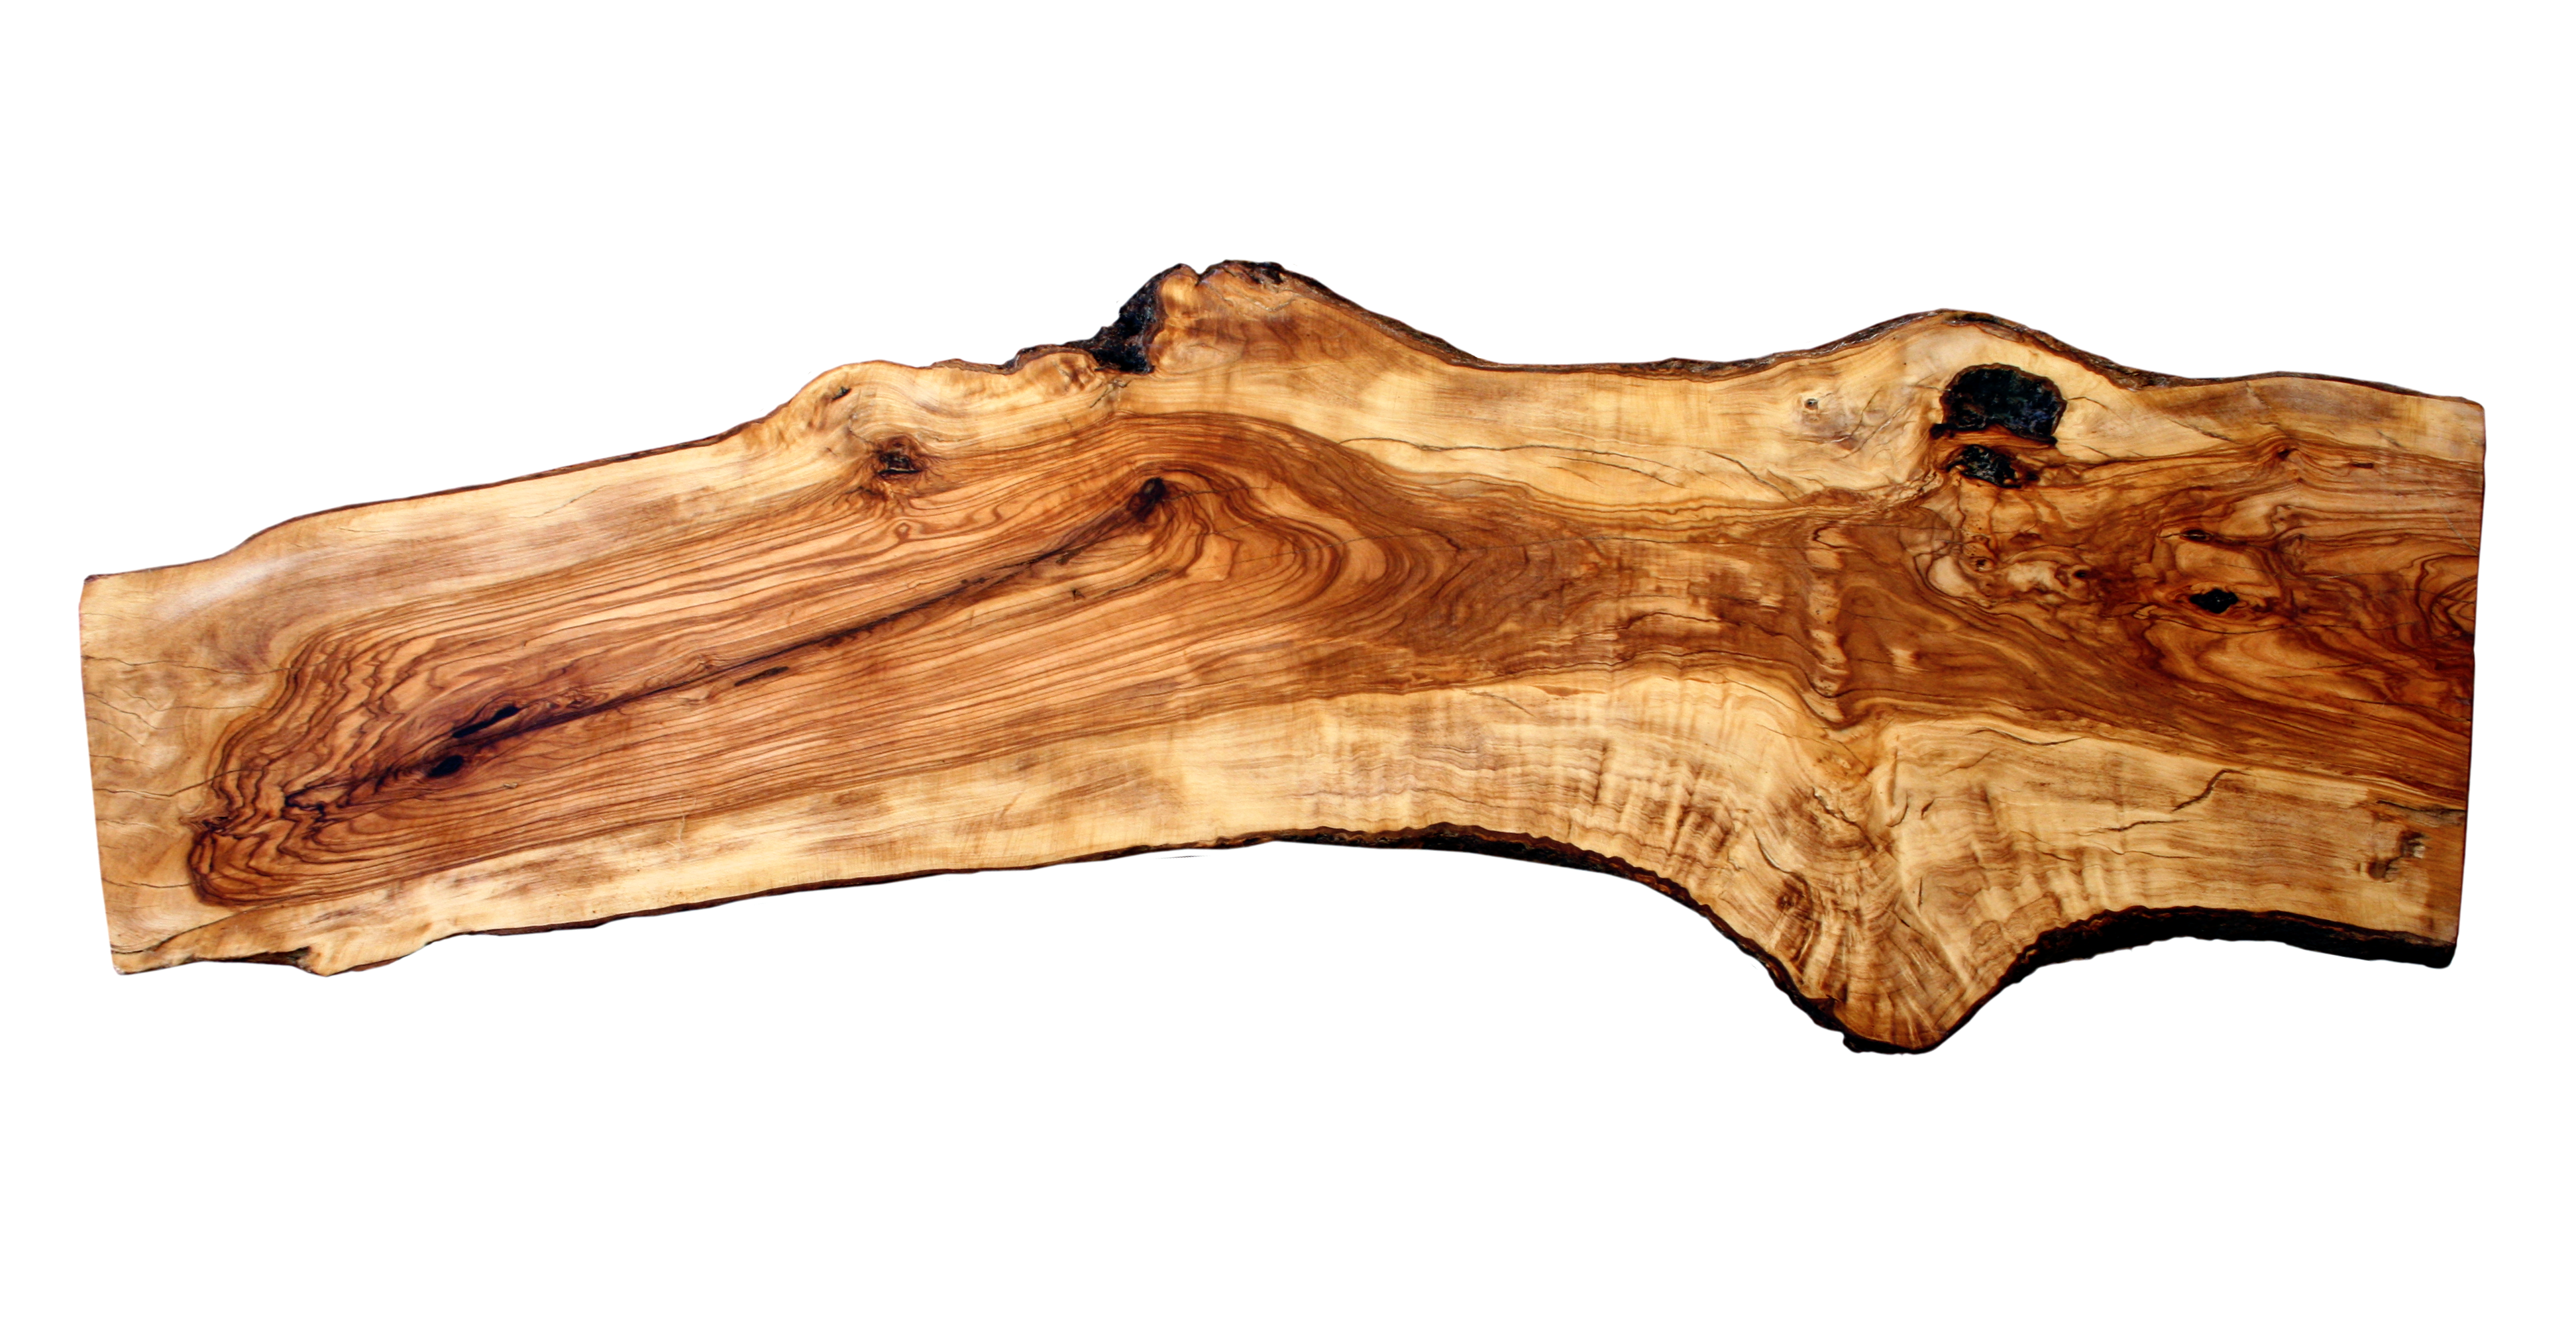 511. balda tablón – Productos madera de olivo